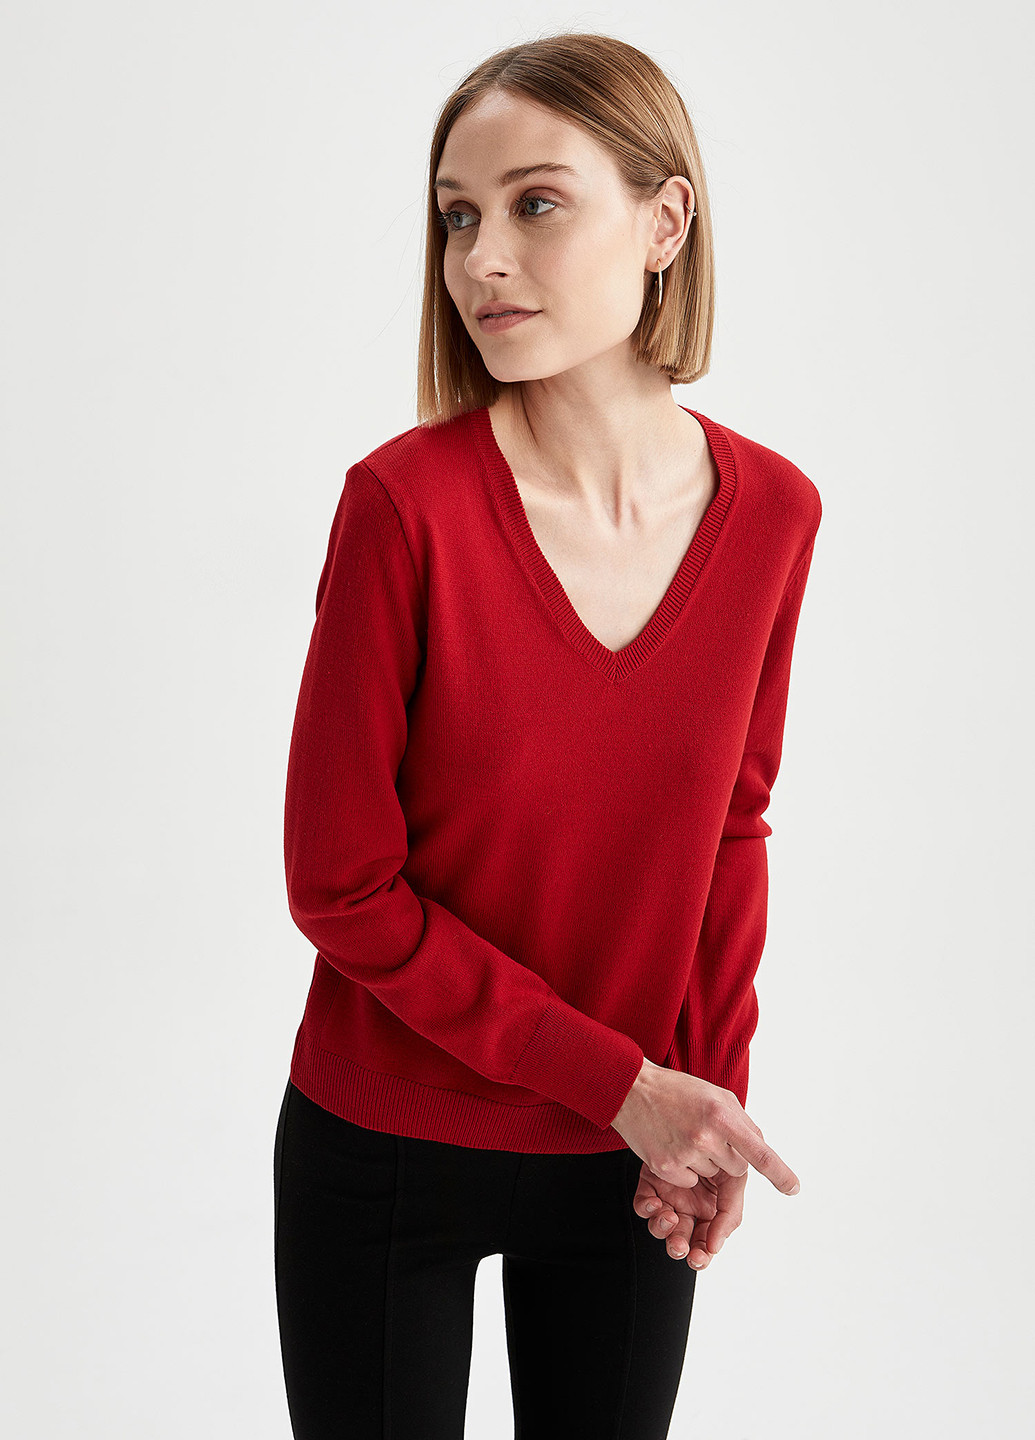 Красный демисезонный пуловер пуловер DeFacto